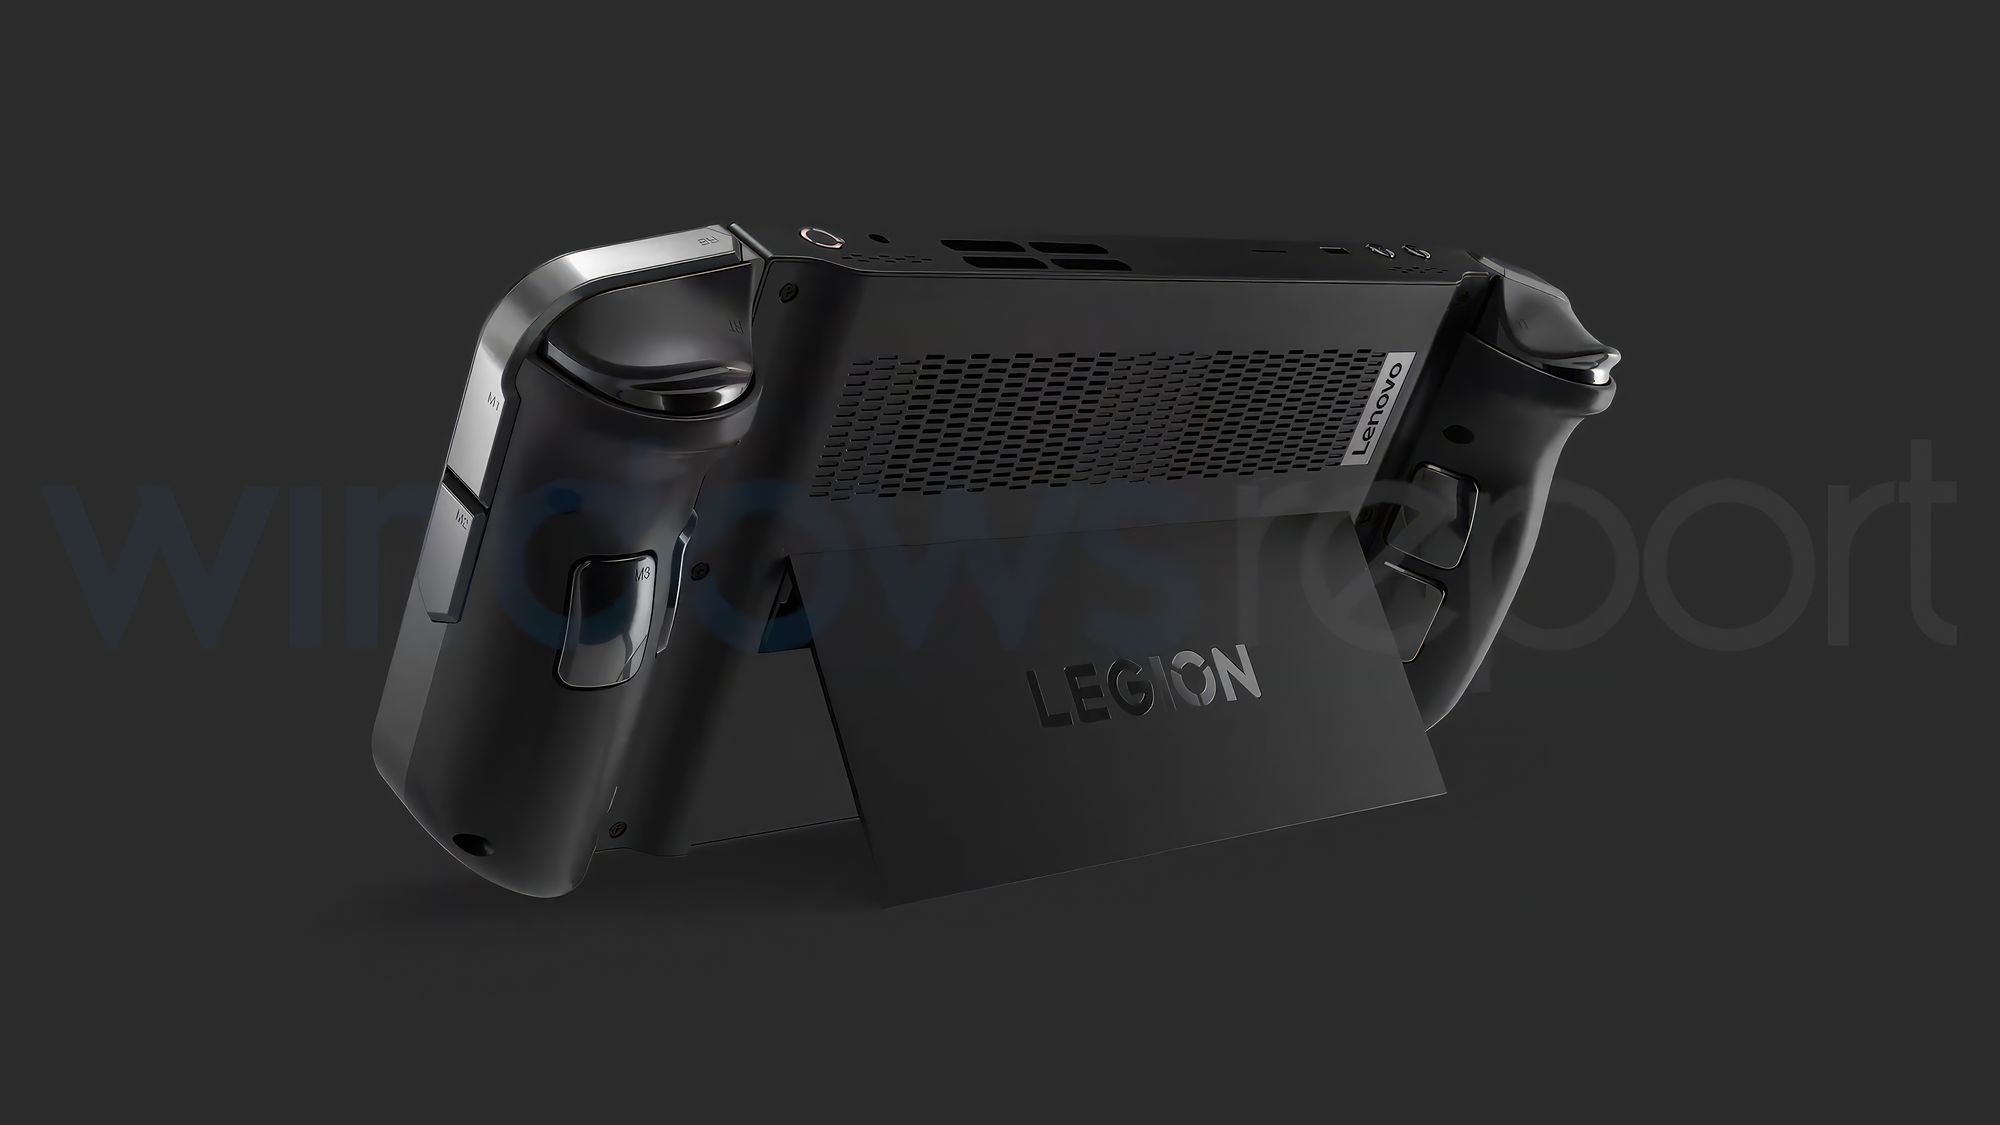 Sau ROG Ally, Lenovo chính thức mở bán Legion Go - thiết bị chơi game cầm tay với mức giá 799$